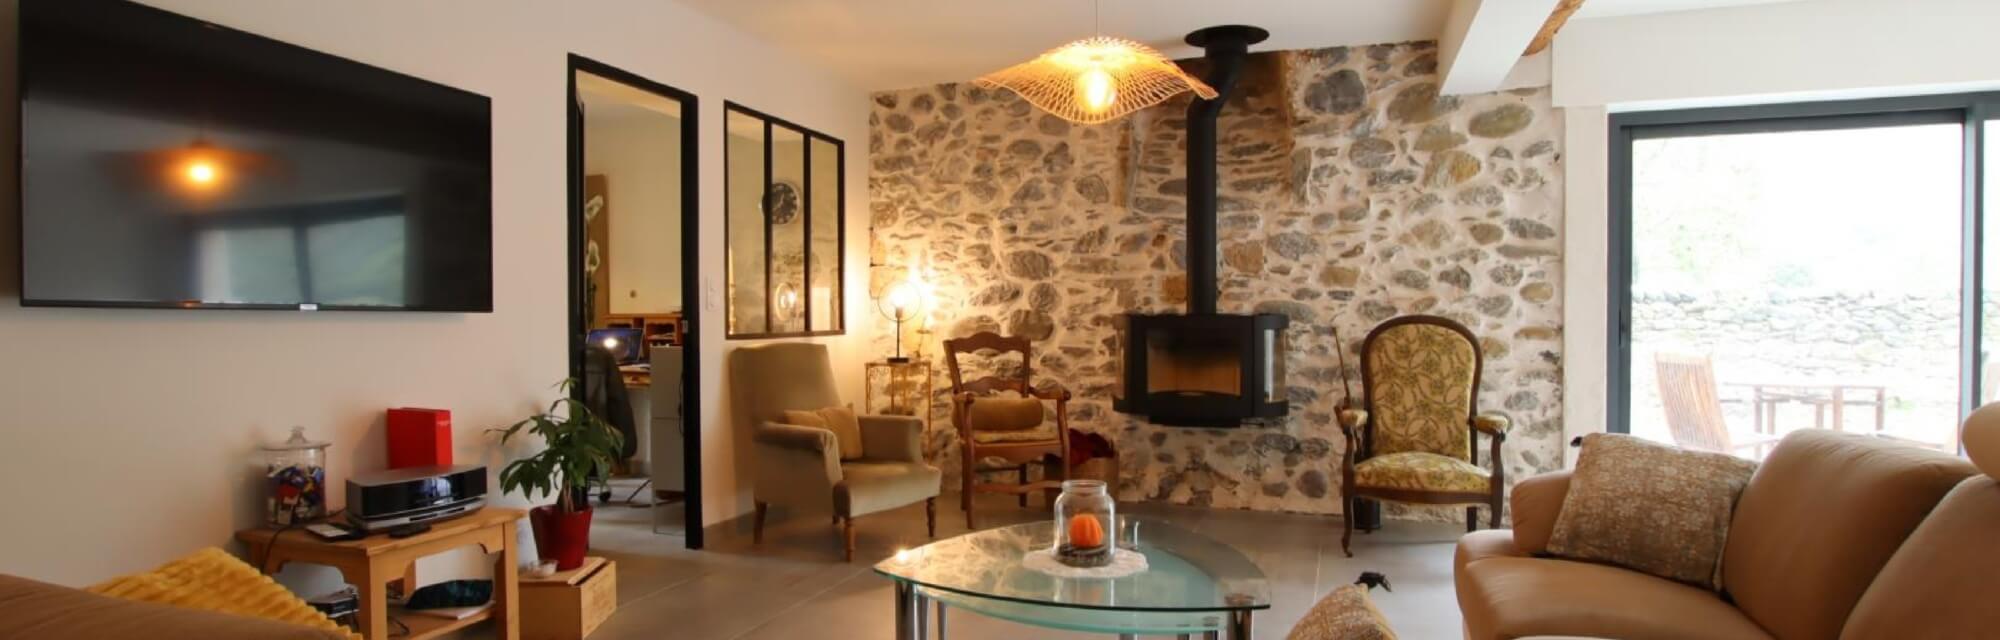 Maison d'hôtes L'Air d'Aspe - séjour chaleureux avec mur en pierres